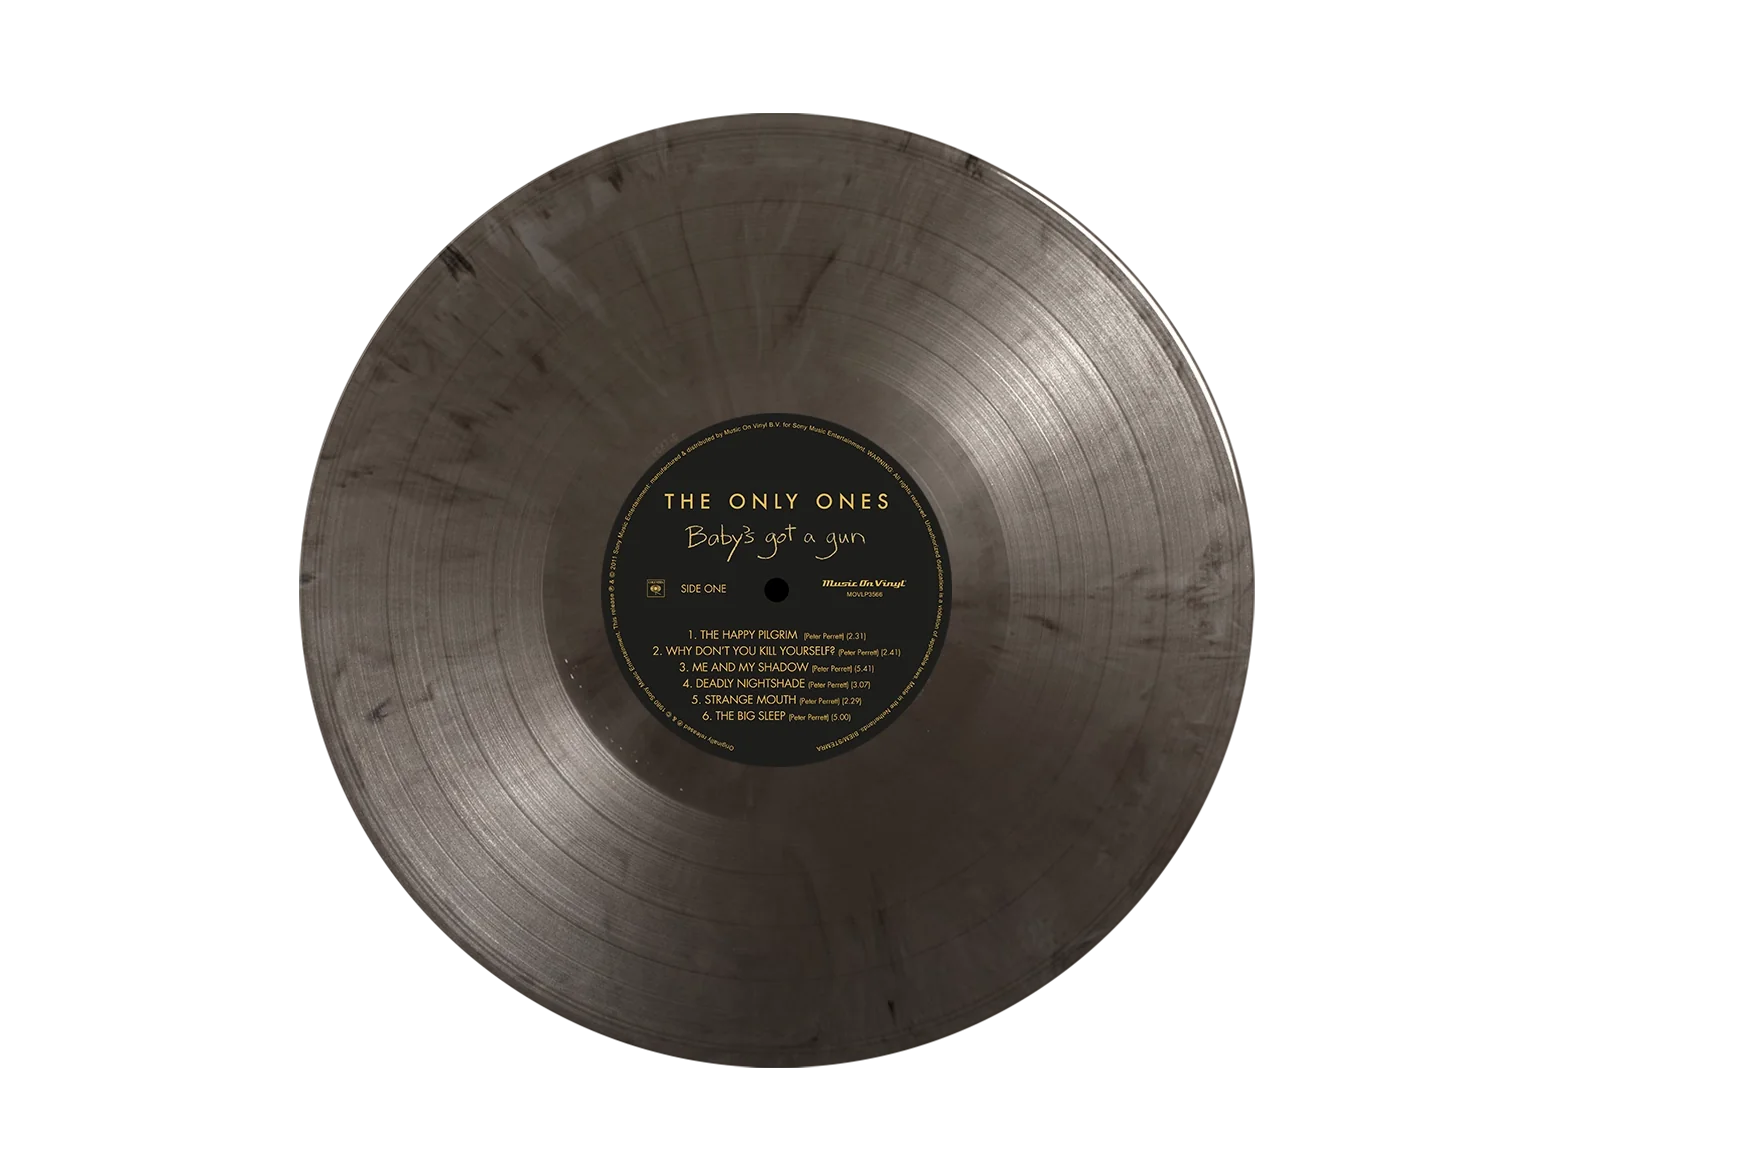 THE ONLY ONES - Baby's Got A Gun (2024 Reissue) - LP - 180g Silver & Black Marbled Vinyl [JUN 14]